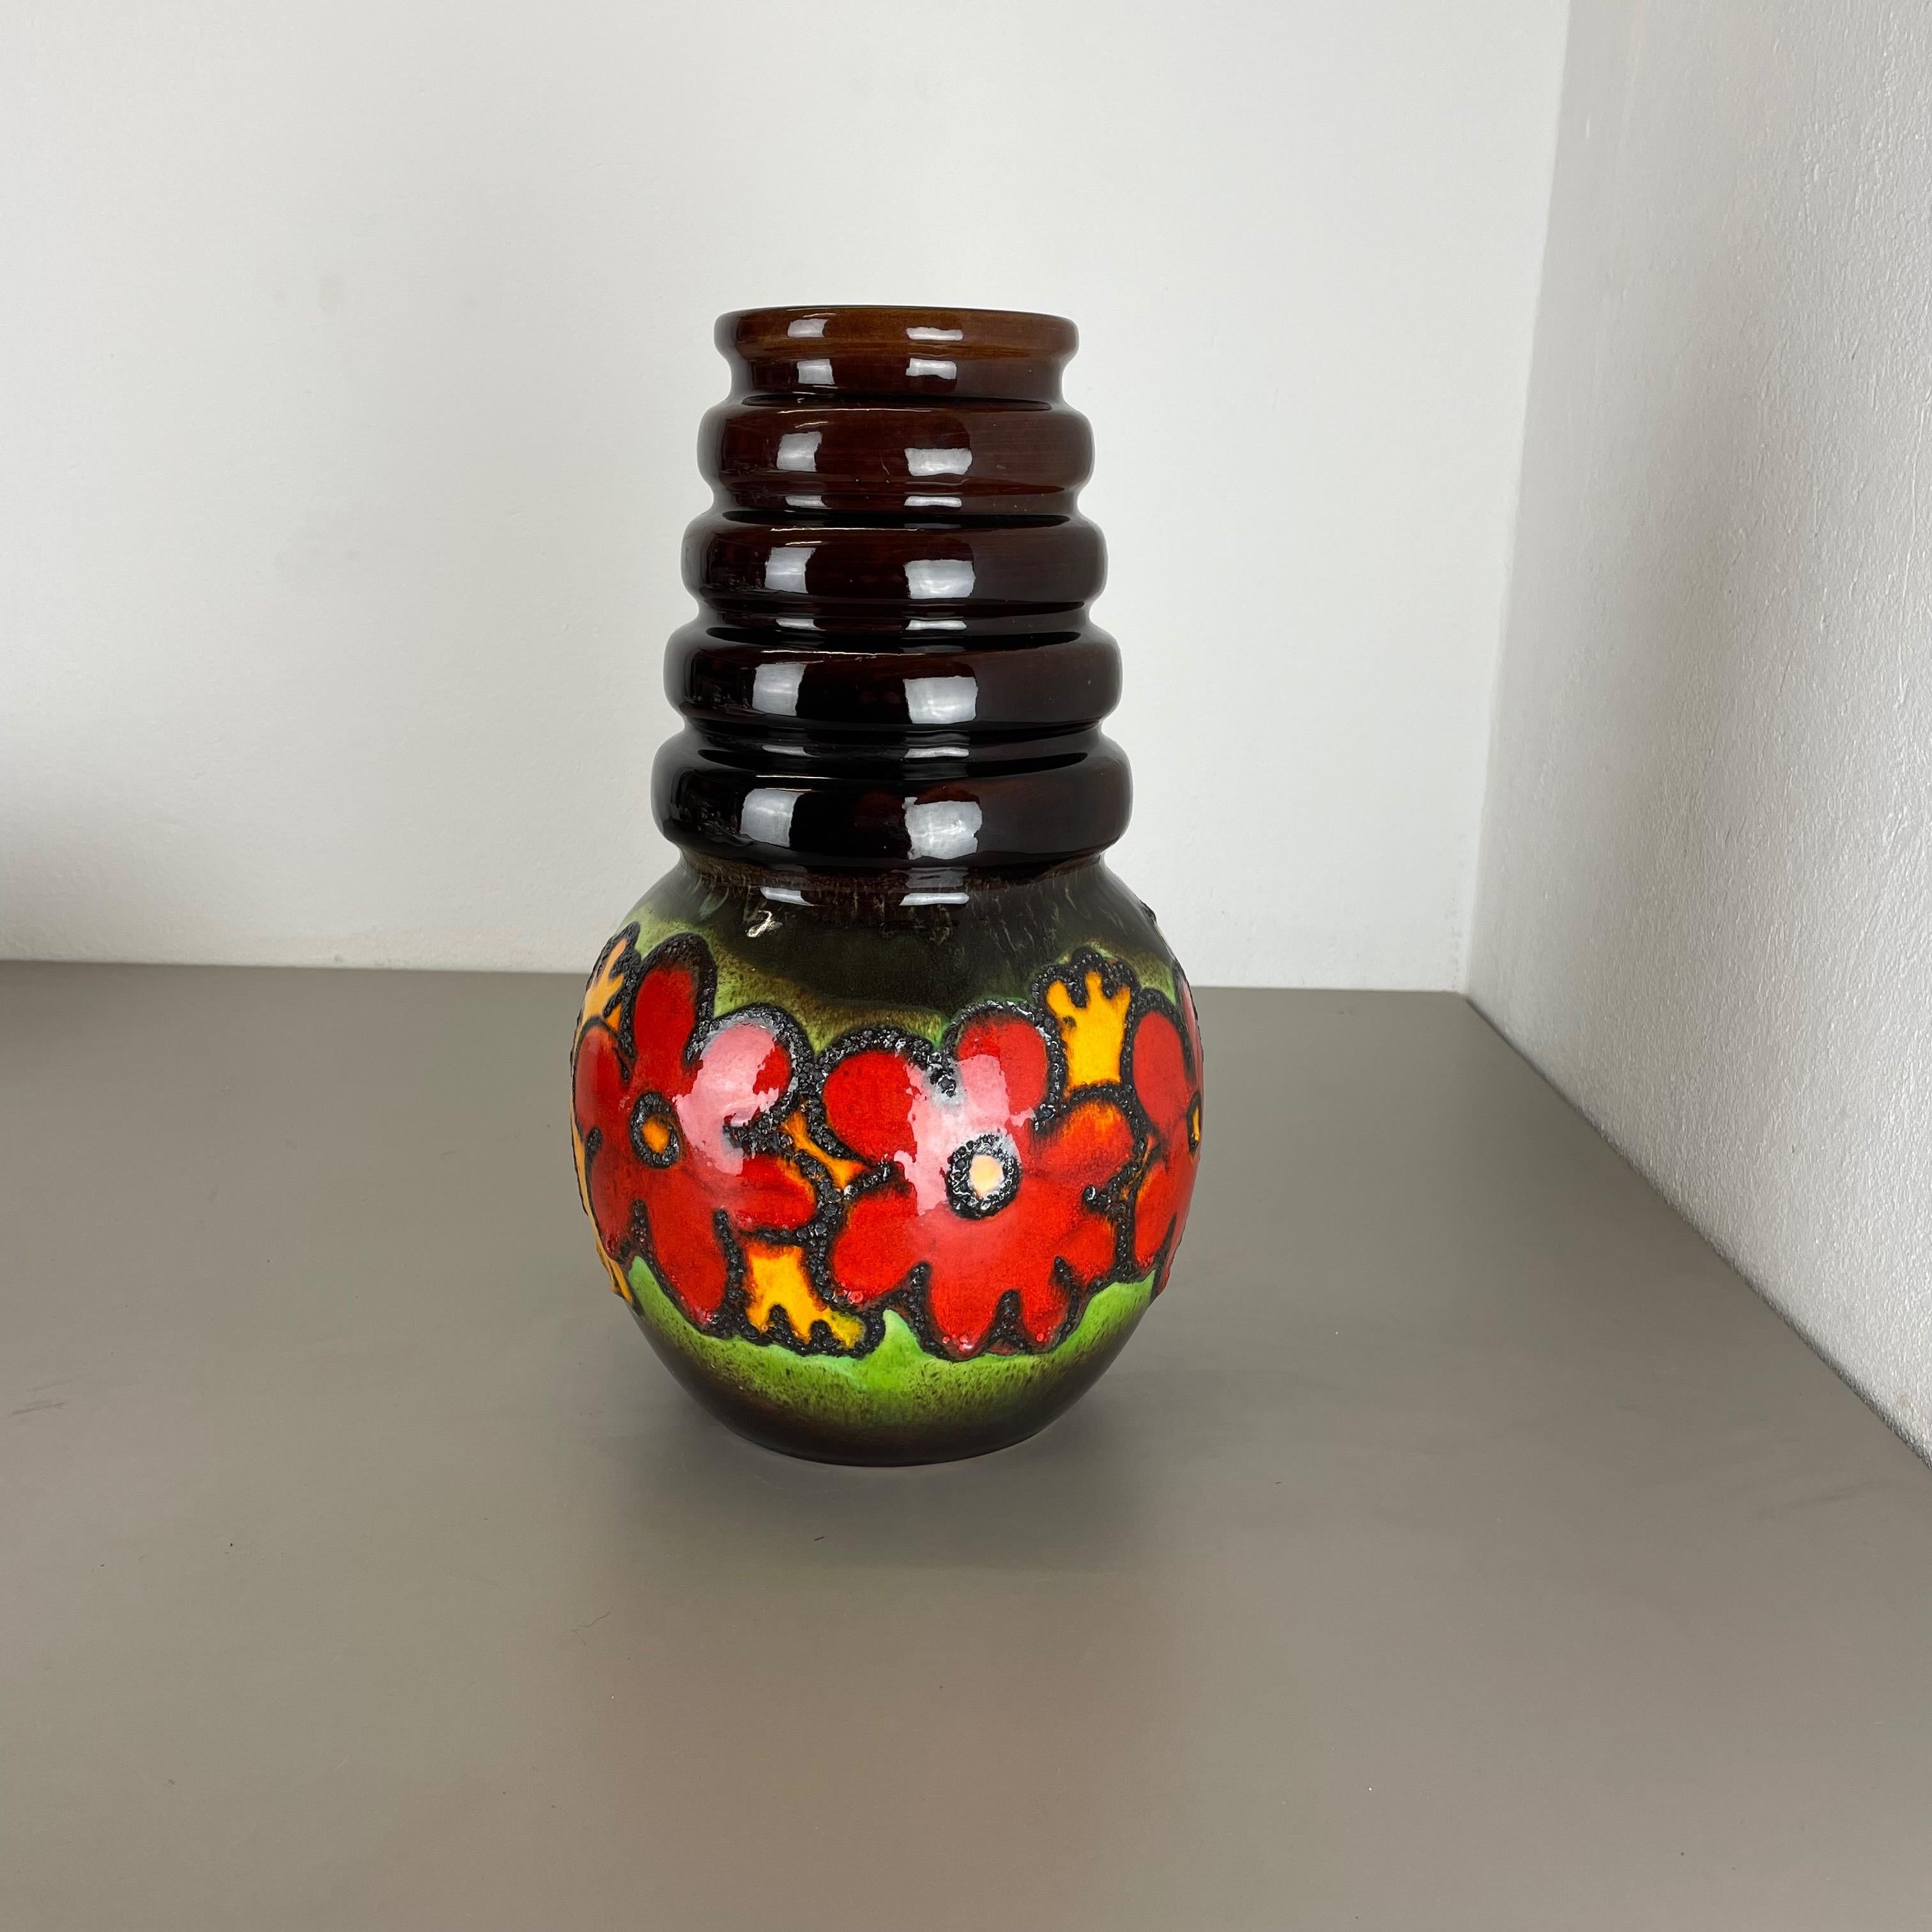 Artikel:

Fat Lava Art Vase extra große Version mit floraler Illustration




Produzent:

Scheurich, Deutschland



Jahrzehnt:

1970s


Beschreibung:

Diese originelle Vintage-Vase wurde in den 1970er Jahren in Deutschland hergestellt. Sie ist aus